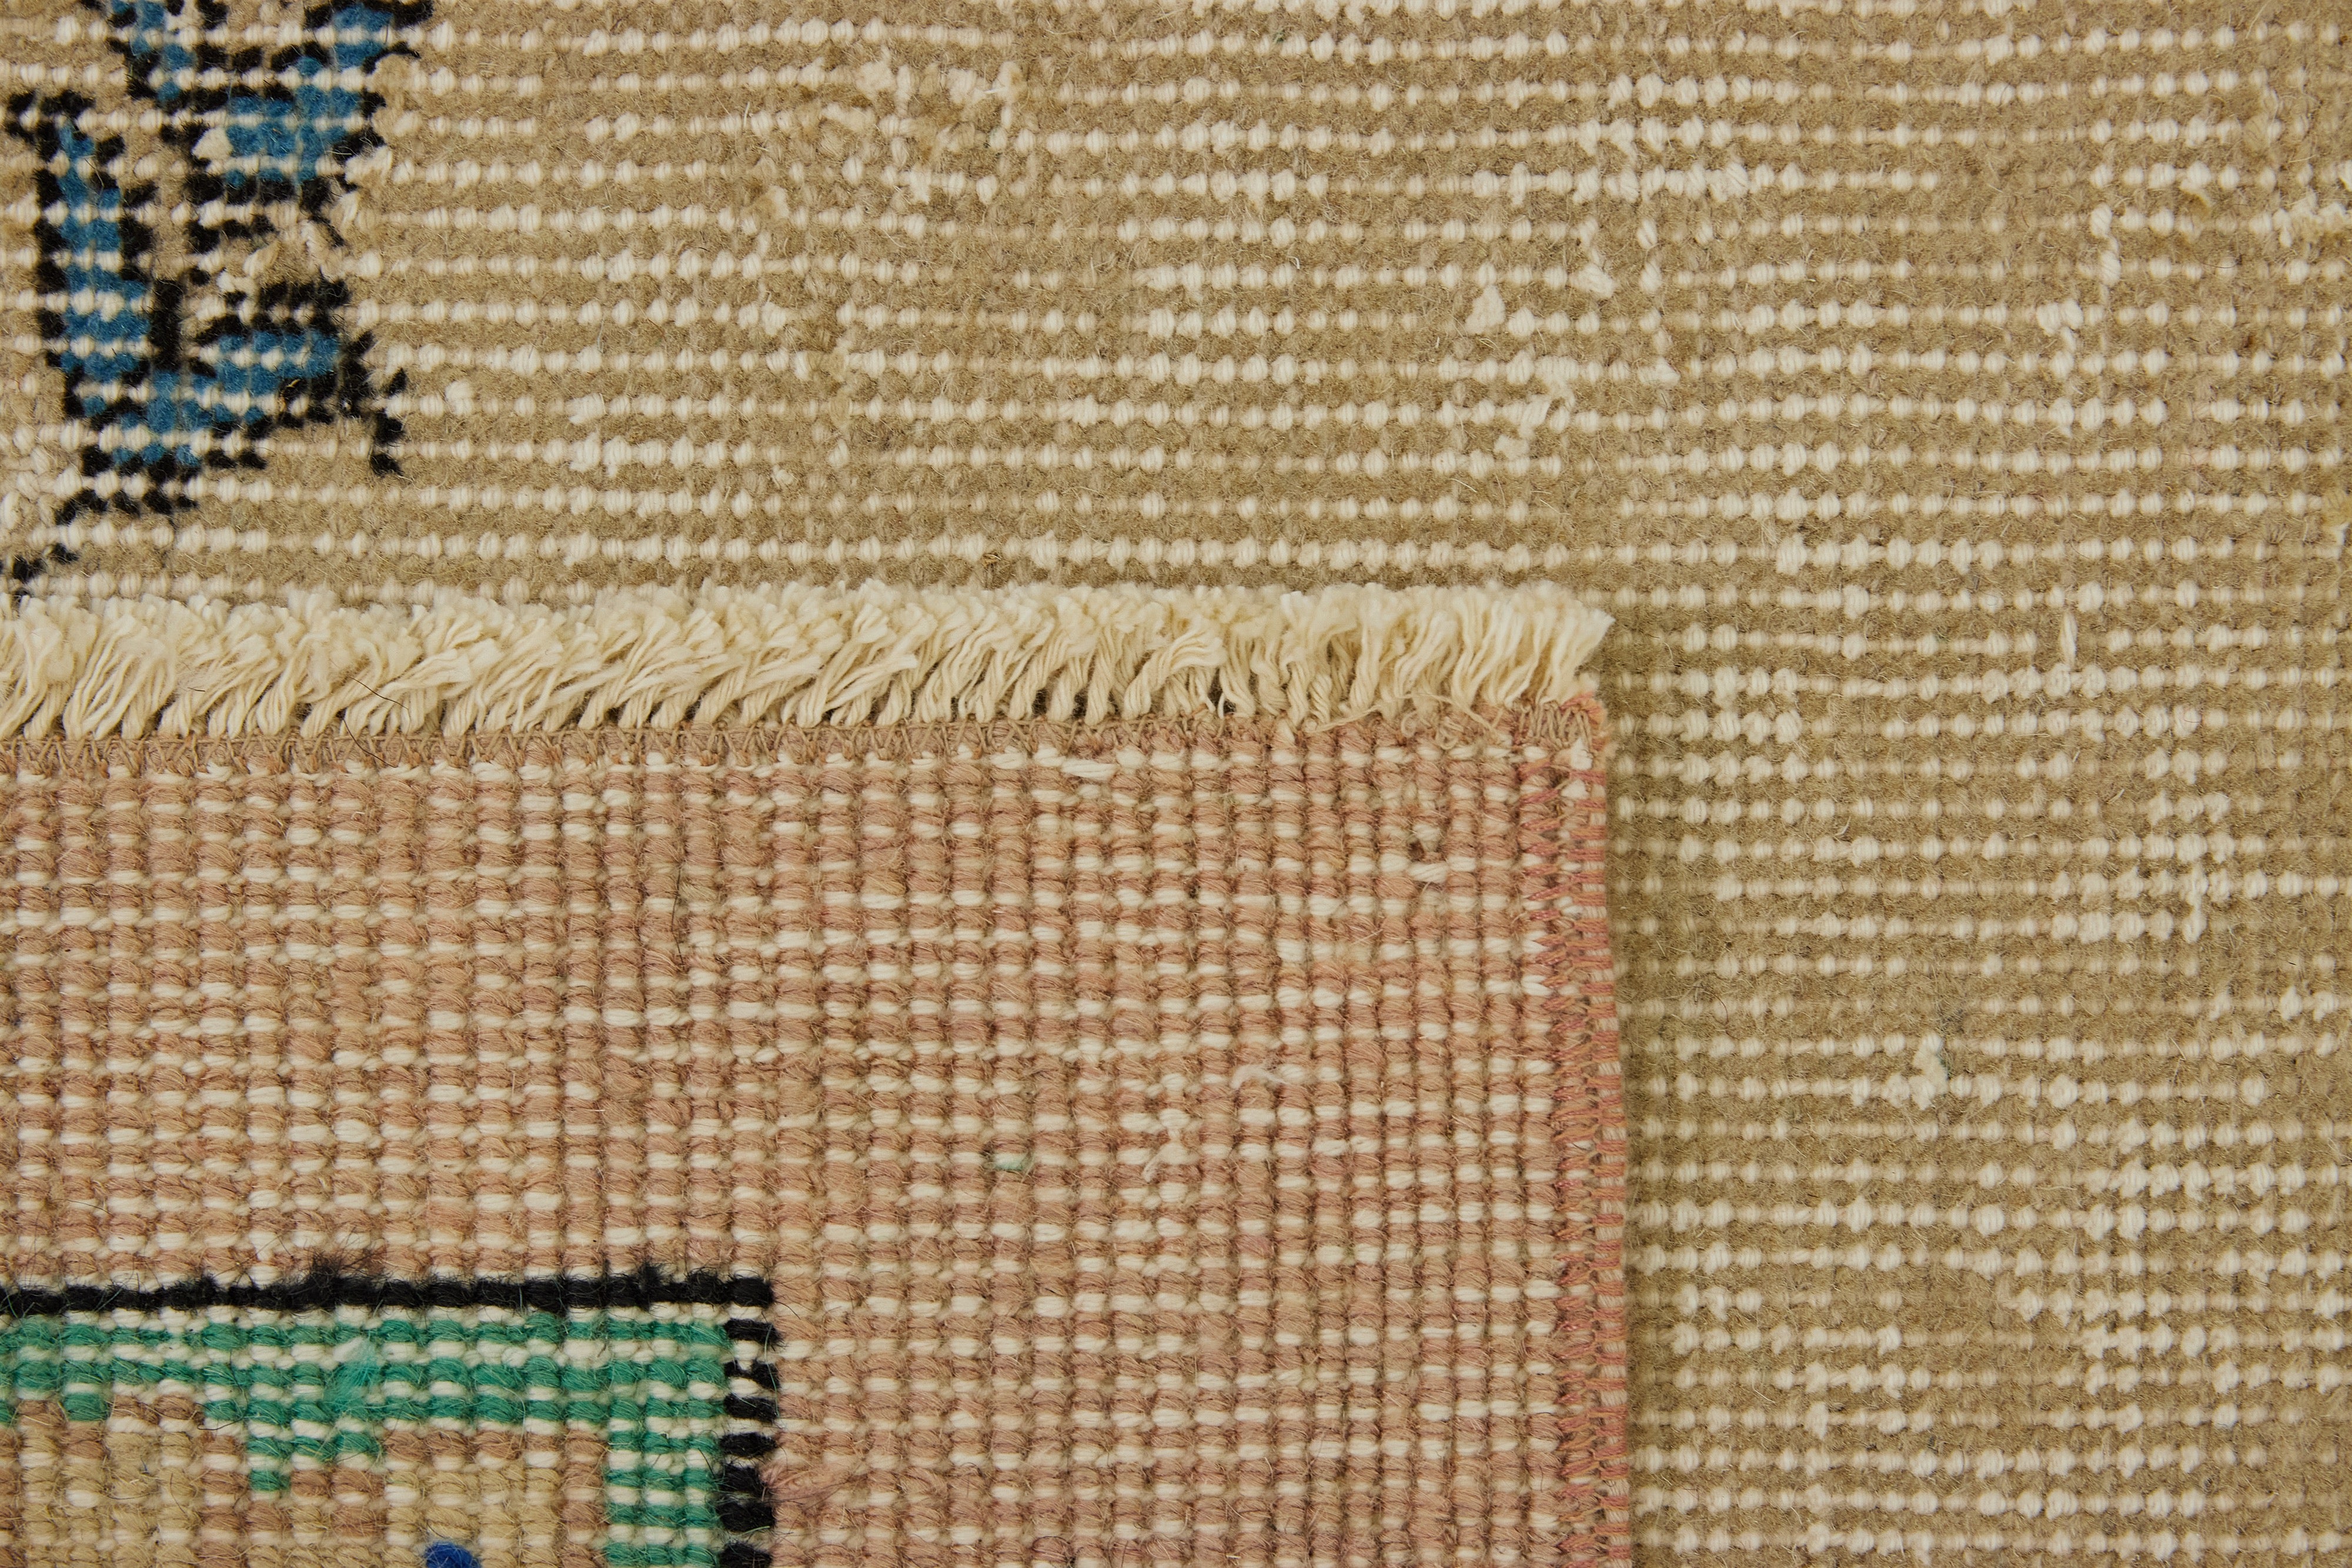 Sophisticated Weaving - Mavis's Turkish Carpet Expertise